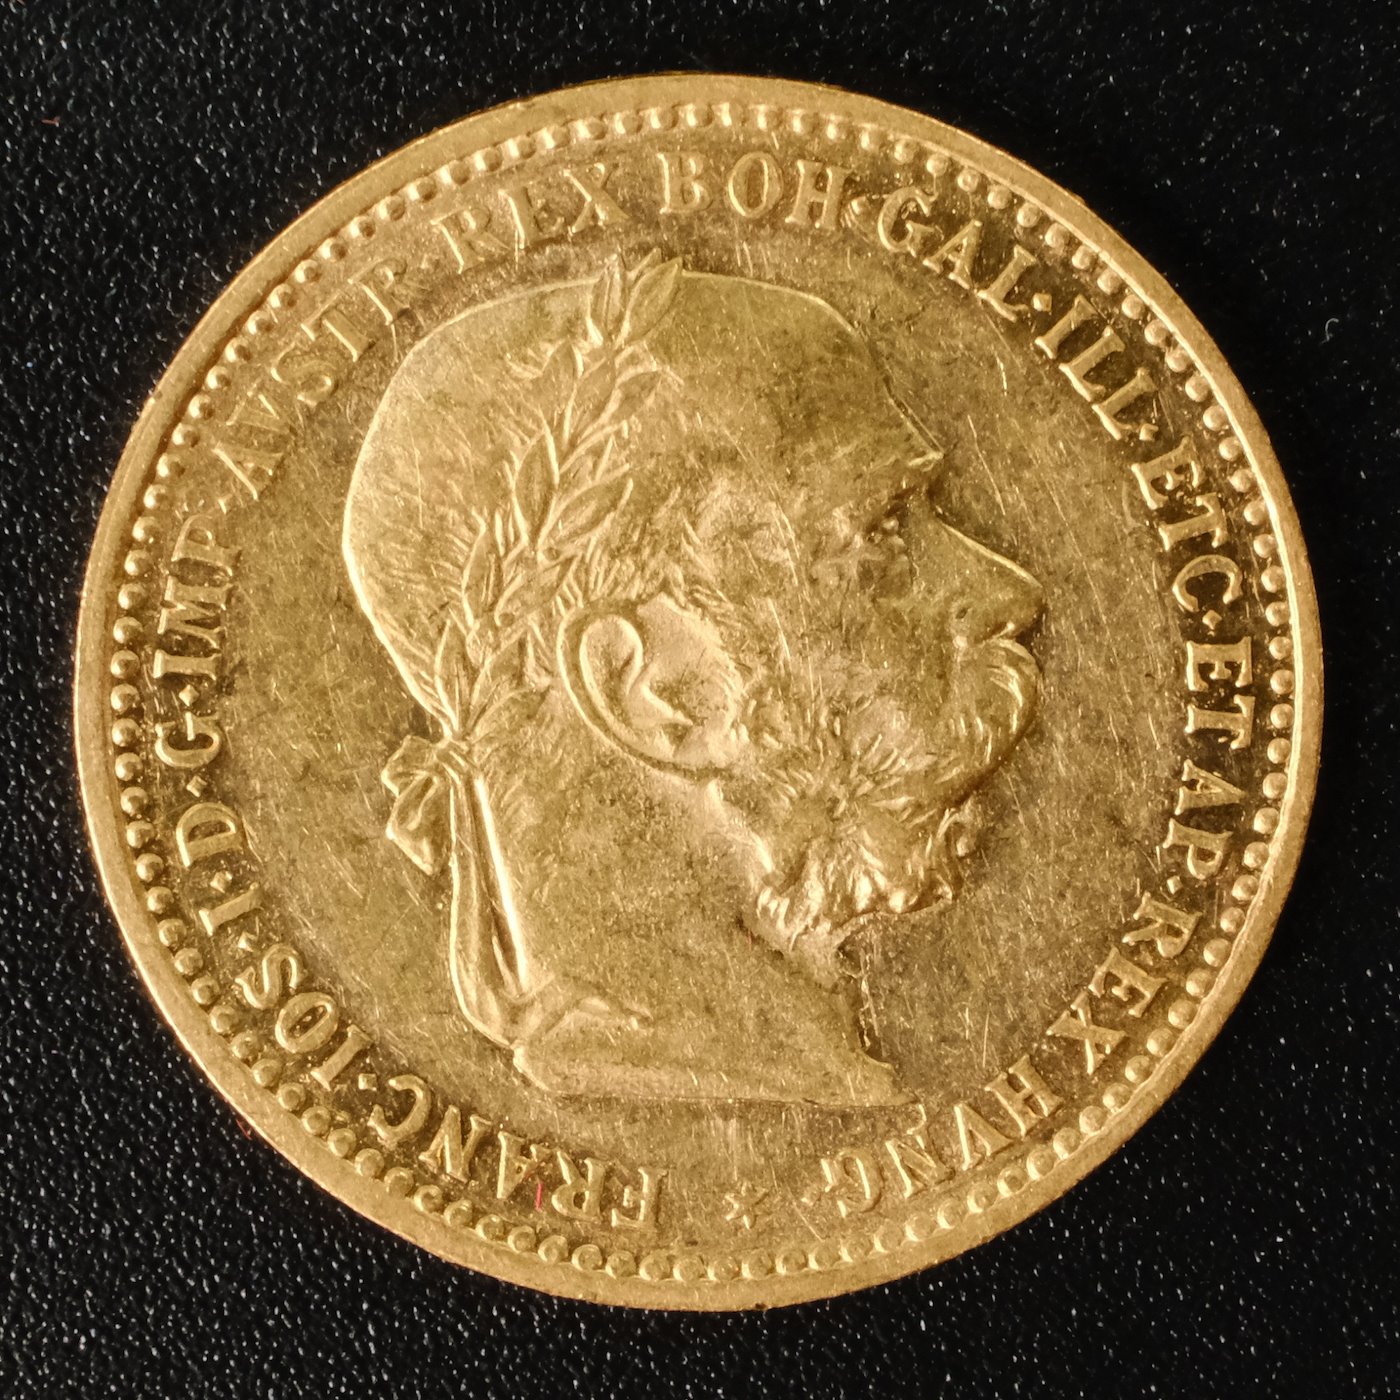 Mince - Rakousko Uhersko zlatá 10 Koruna 1896 rakouská, Zlato 900/1000, hrubá hmotnost mince 3,387g